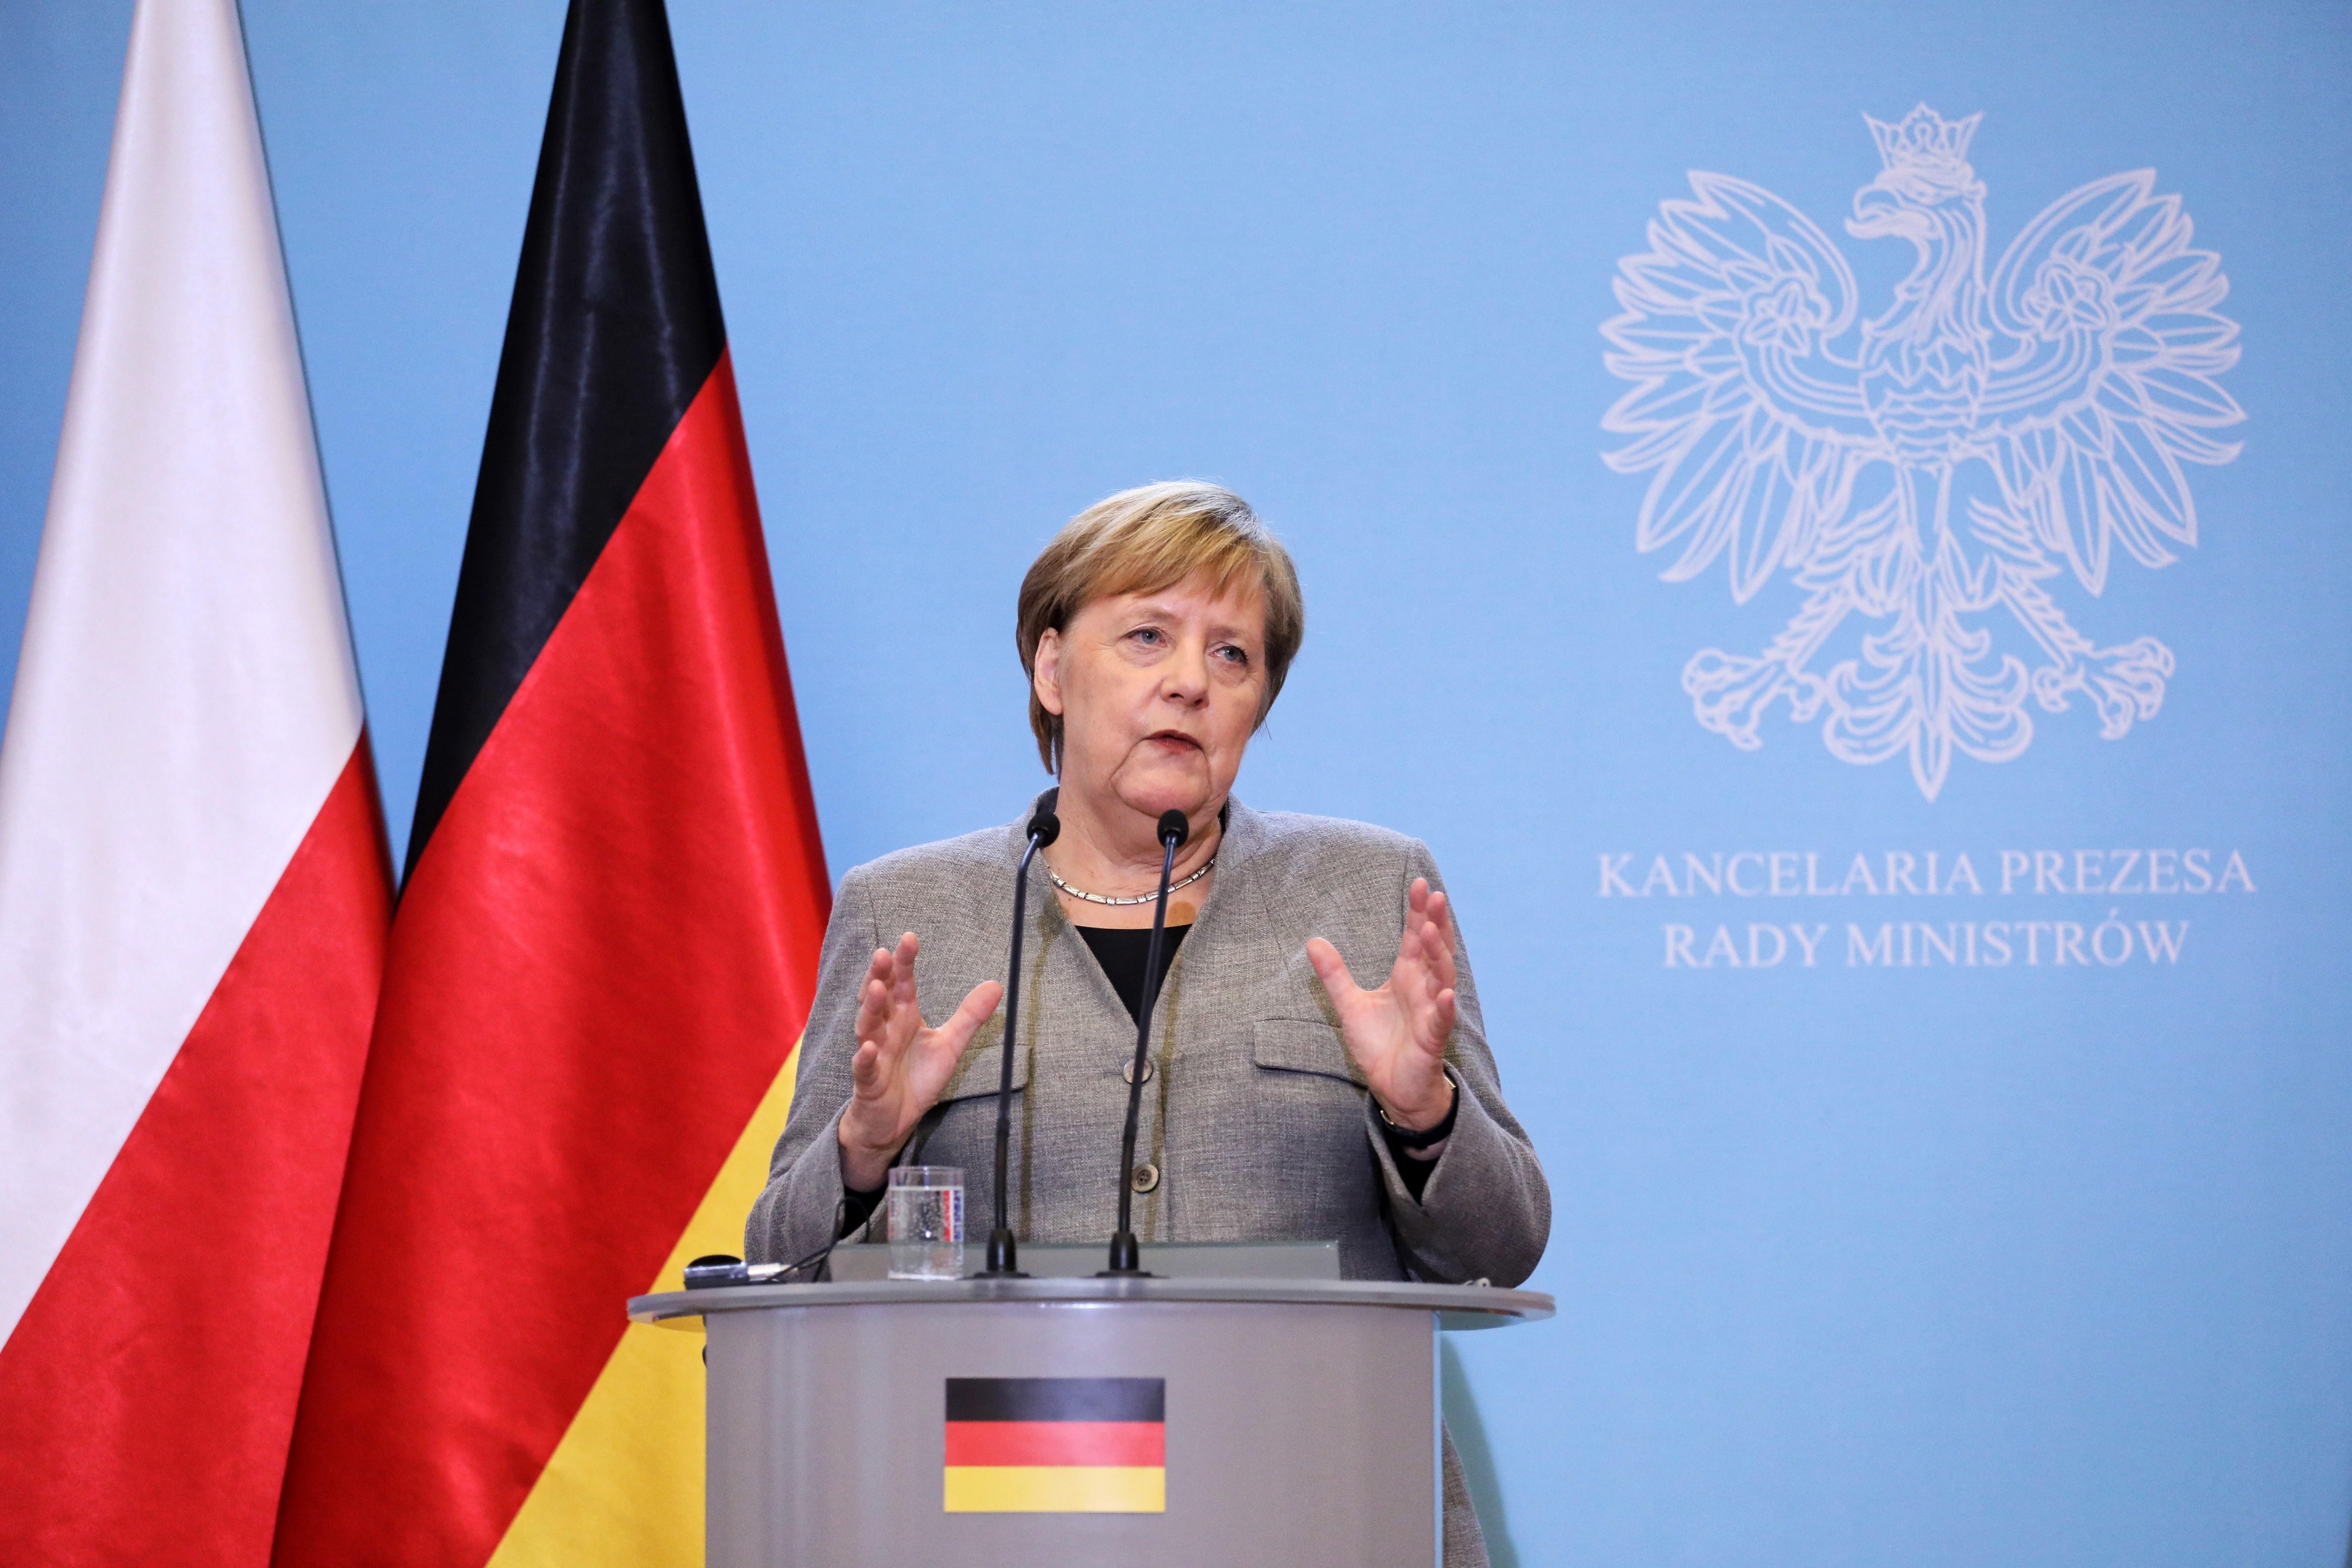 Alemania recuerda a todos los Estados de la UE que tienen que respetar los derechos humanos